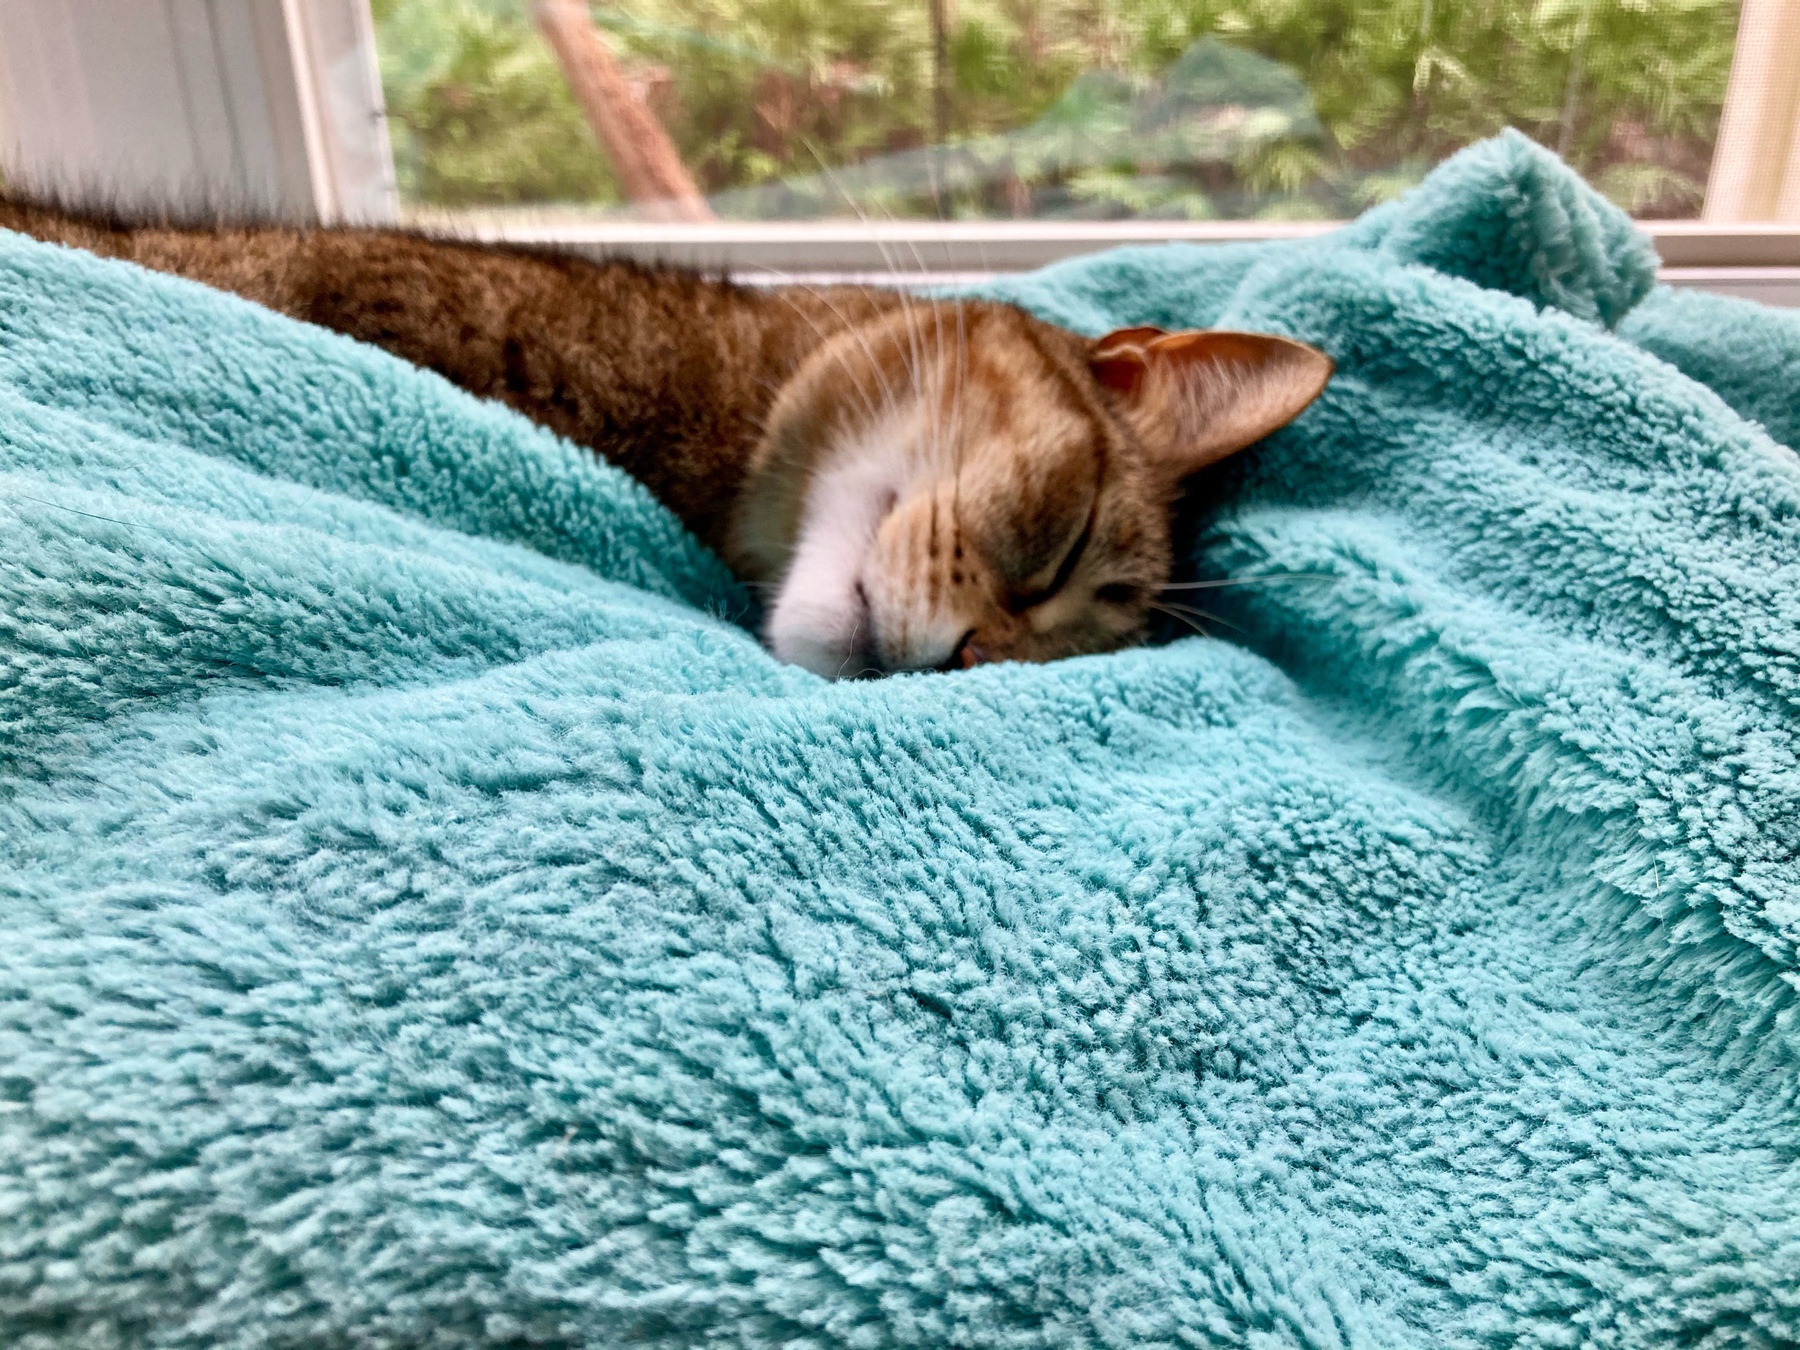 cat sleeping on blue blanket by a window